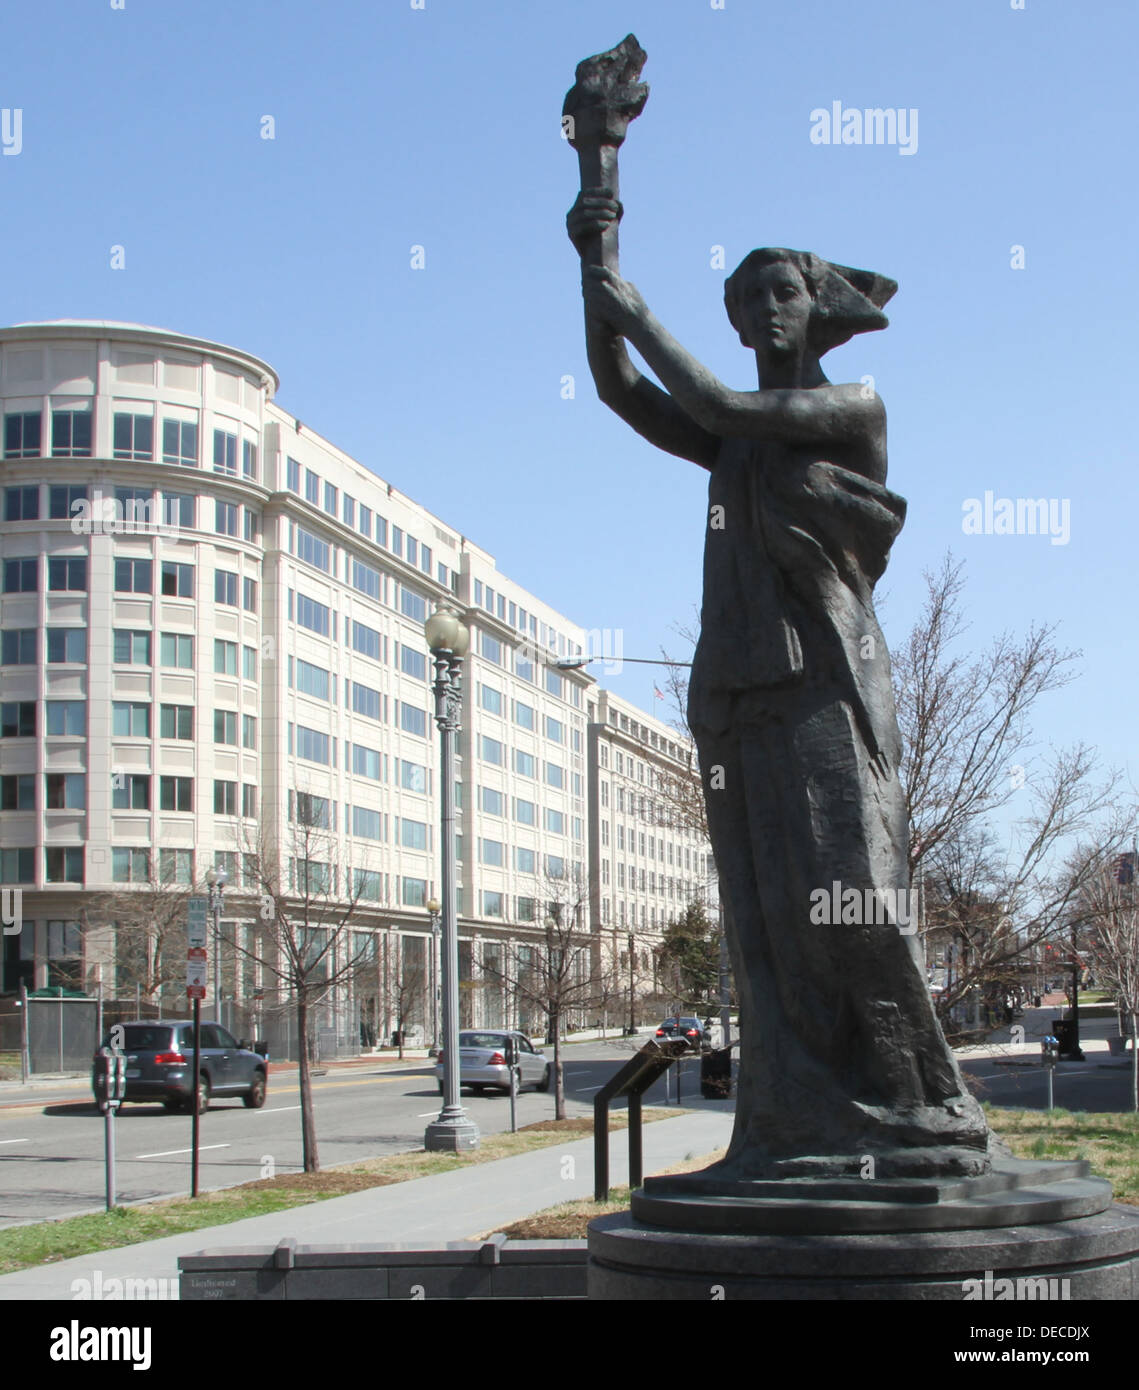 Vittime del comunismo Memorial a Washington DC. Questa è una ricreazione di Thomas Marsh della statua "dea della democrazia" che era il simbolo dei contestatori eretto in piazza Tianammenthe nel 1989 e brutalmente distrutta dalla RPC governo comunista. Foto Stock